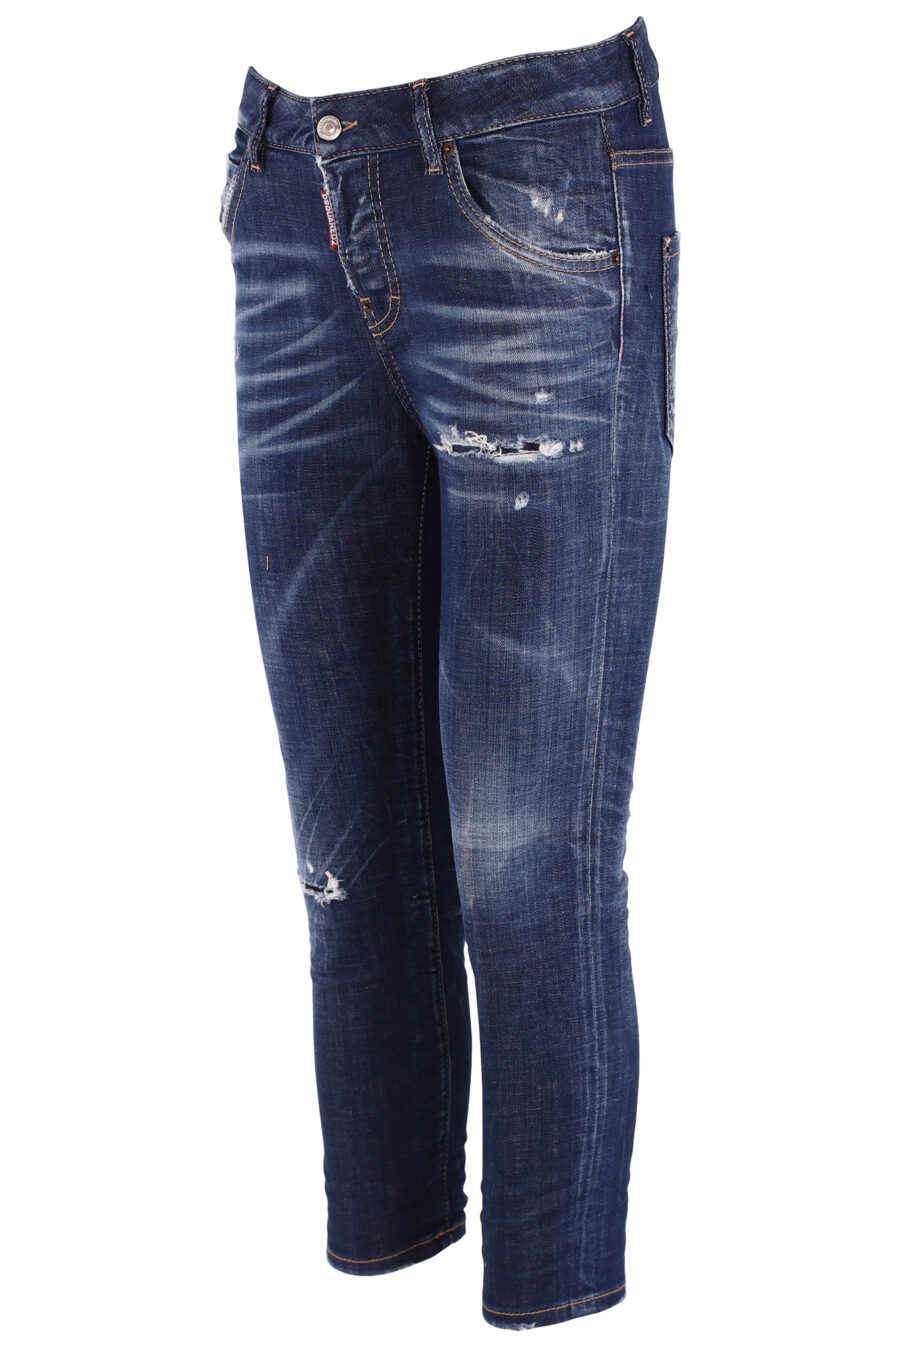 Gekürzte blaue Jeans mit gestickten Blumen für coole Mädchen - IMG 3750